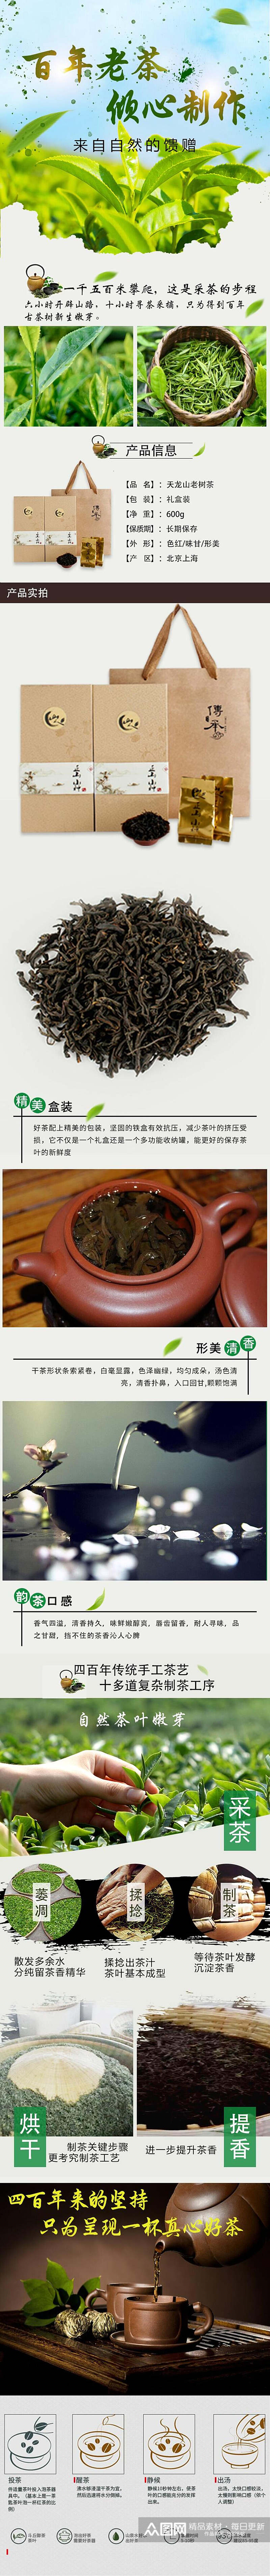 百年老茶茶类电商详情页素材